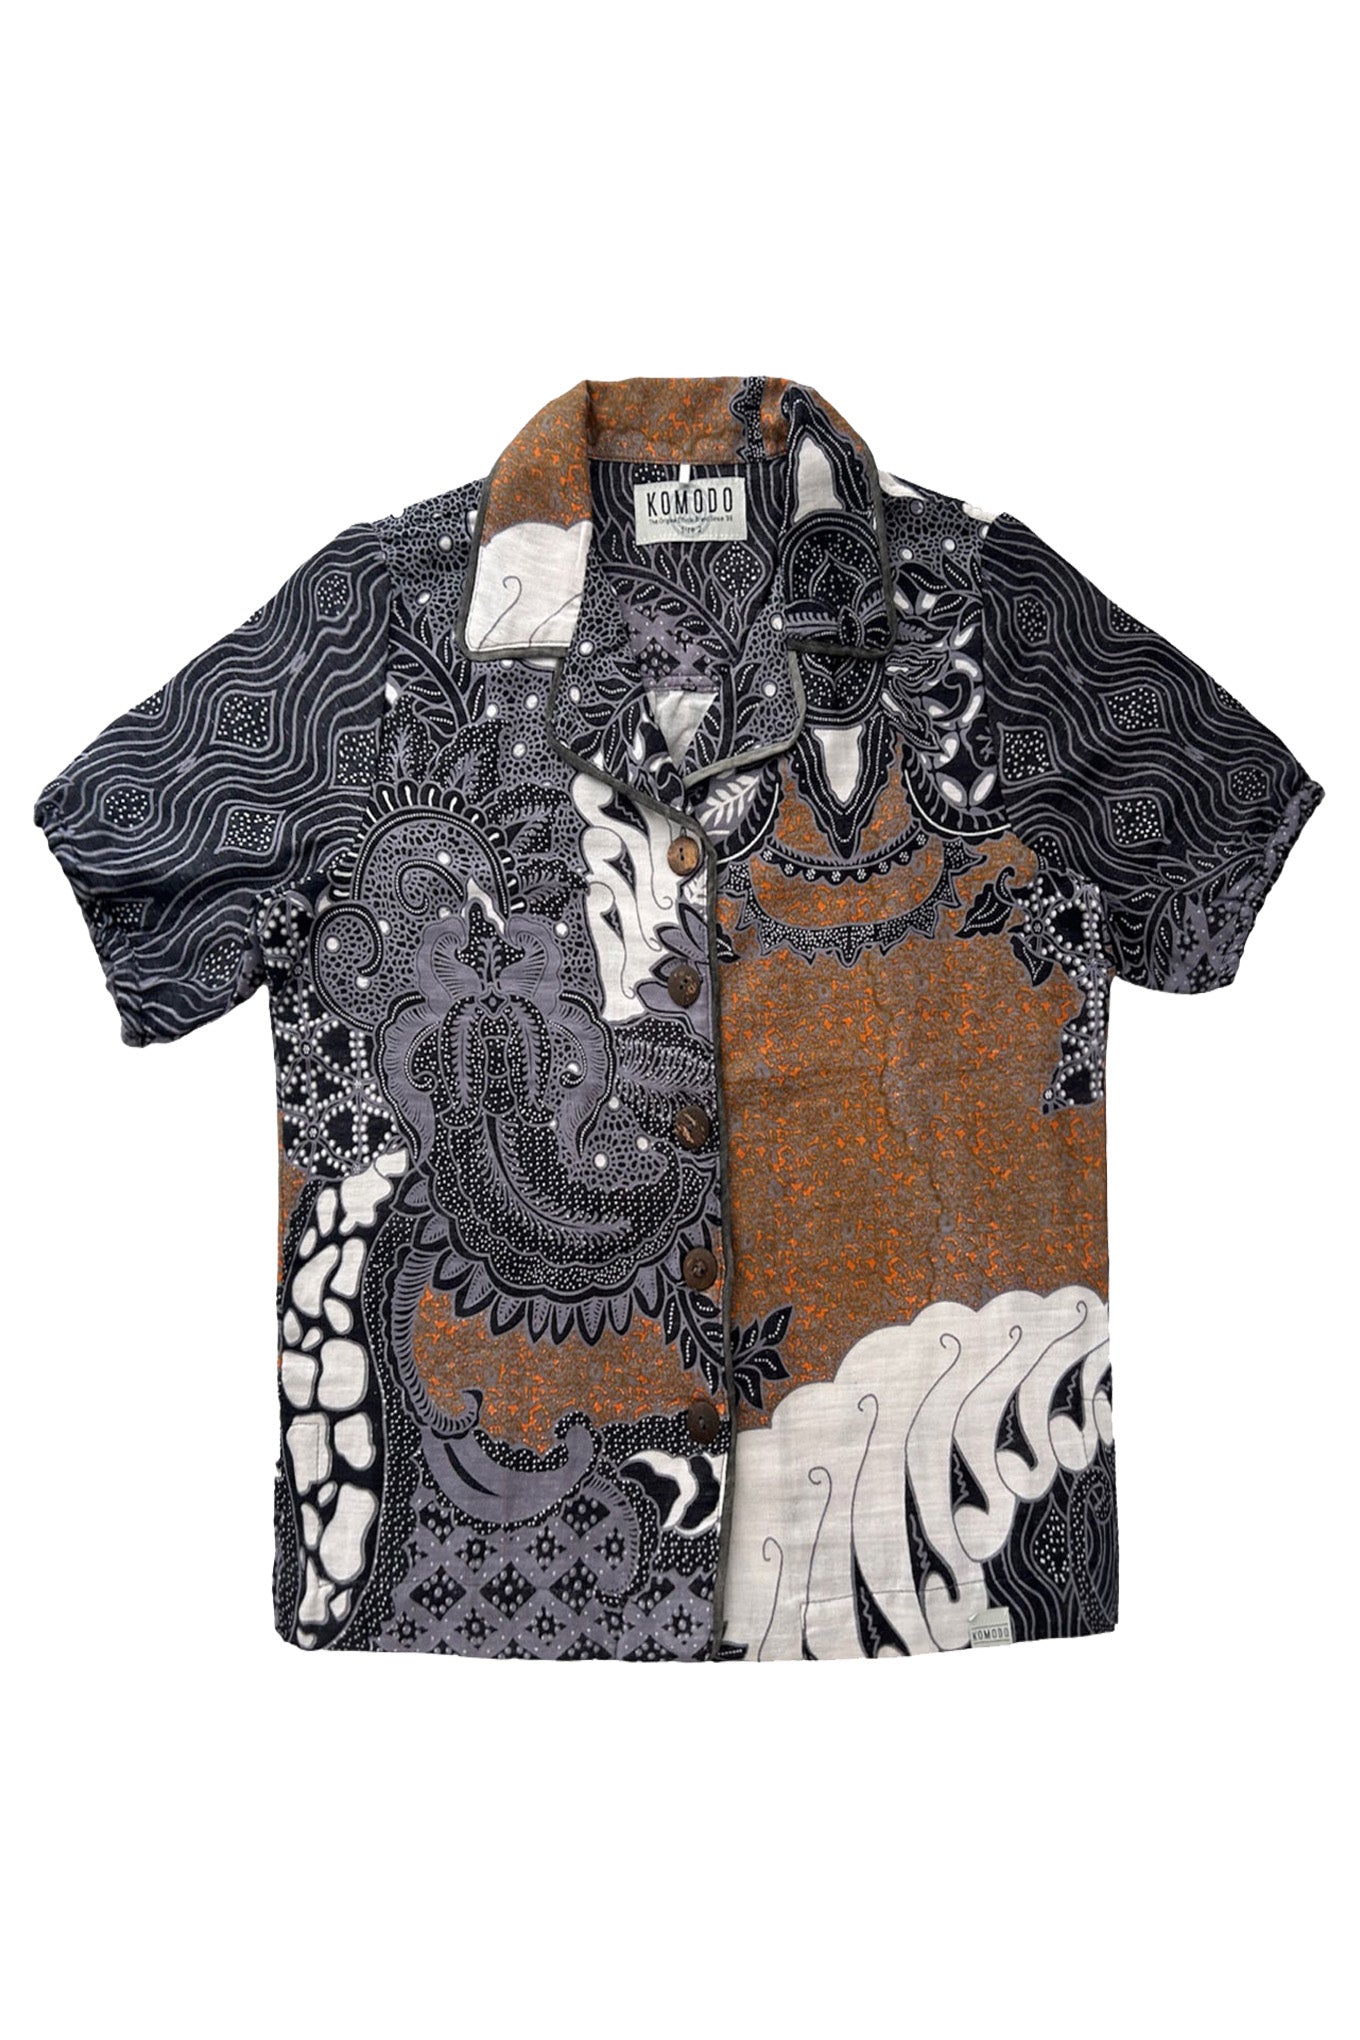 ZORI - Organic Cotton Blouse Batik Print Black